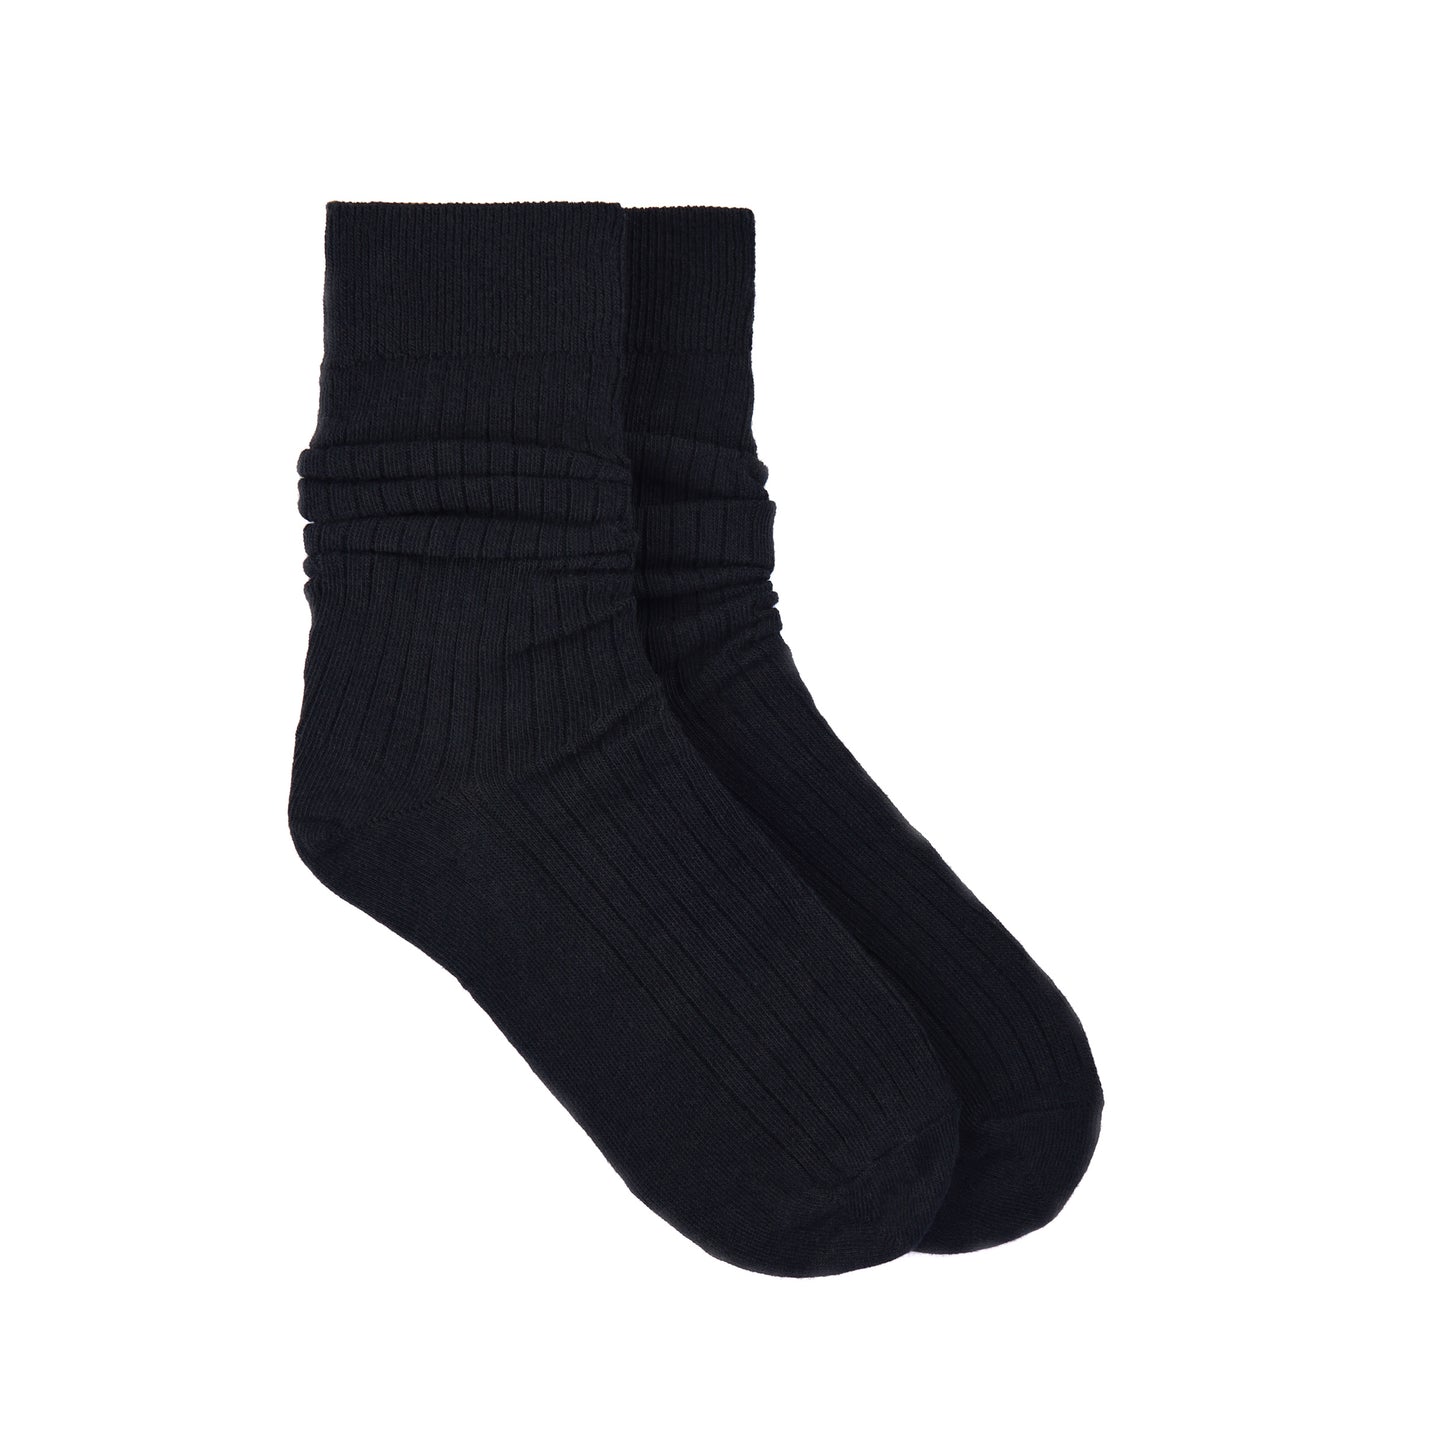 Ribbed Cotton Socks in Black